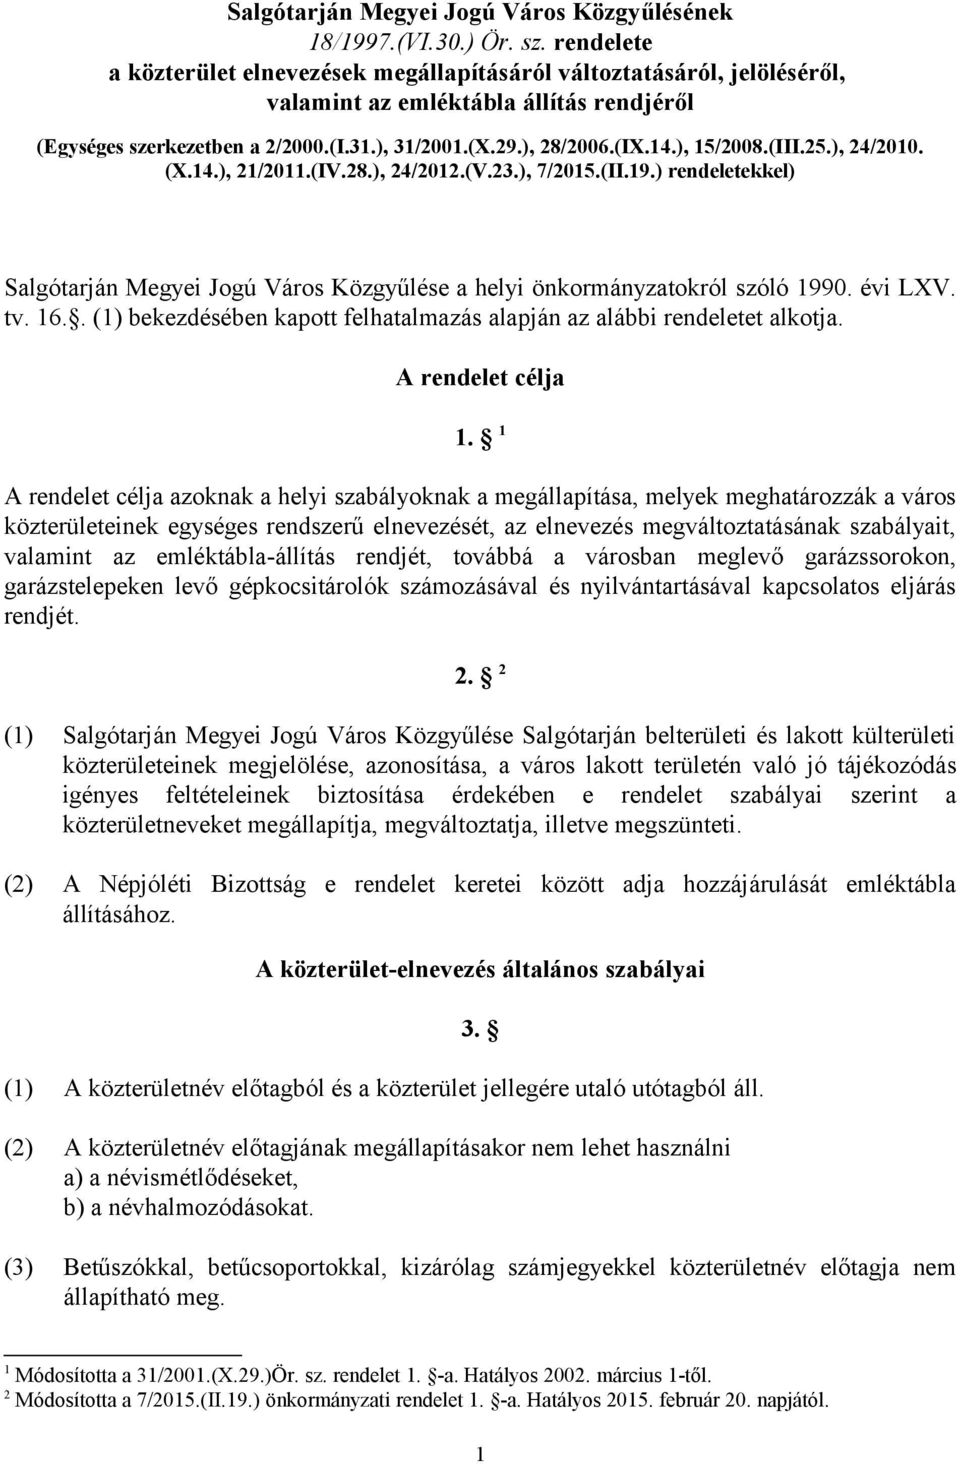 ), 15/2008.(III.25.), 24/2010. (X.14.), 21/2011.(IV.28.), 24/2012.(V.23.), 7/2015.(II.19.) rendeletekkel) Salgótarján Megyei Jogú Város Közgyűlése a helyi önkormányzatokról szóló 1990. évi LXV. tv.